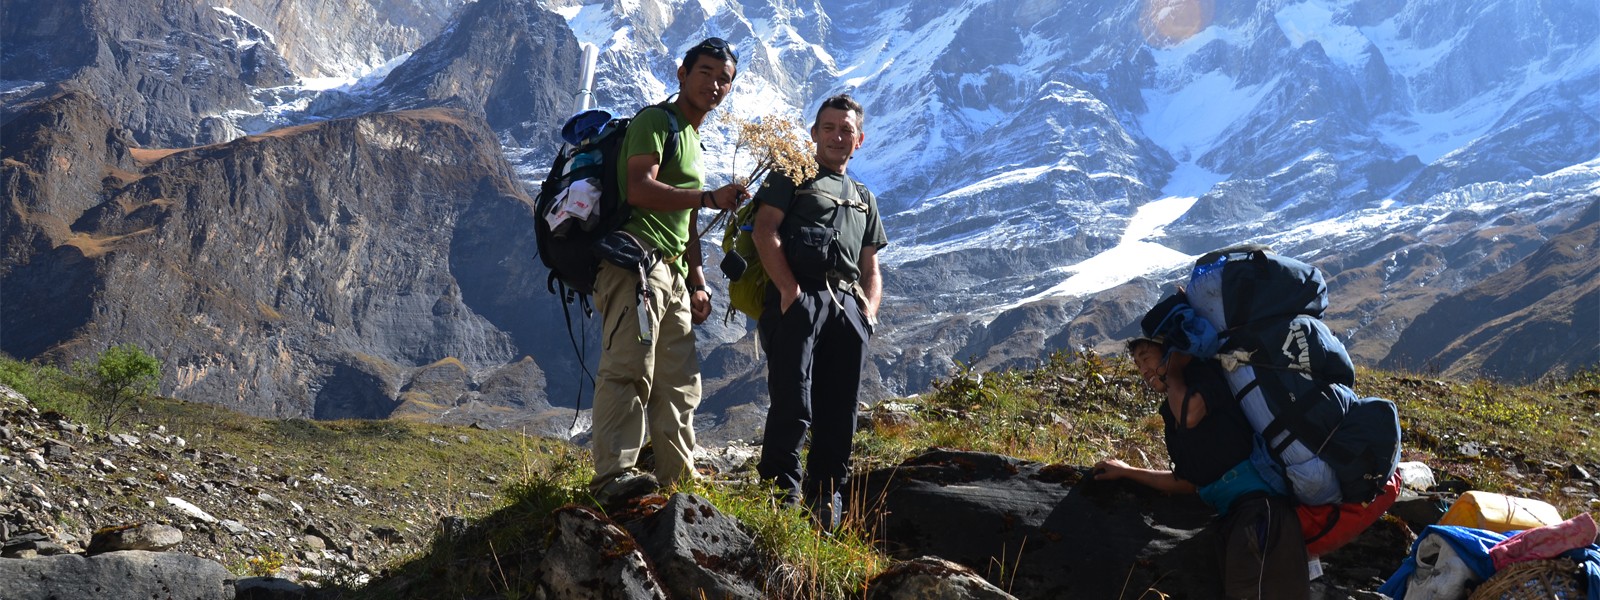 Dhaulagiri Circuit and Annapurna Trekking